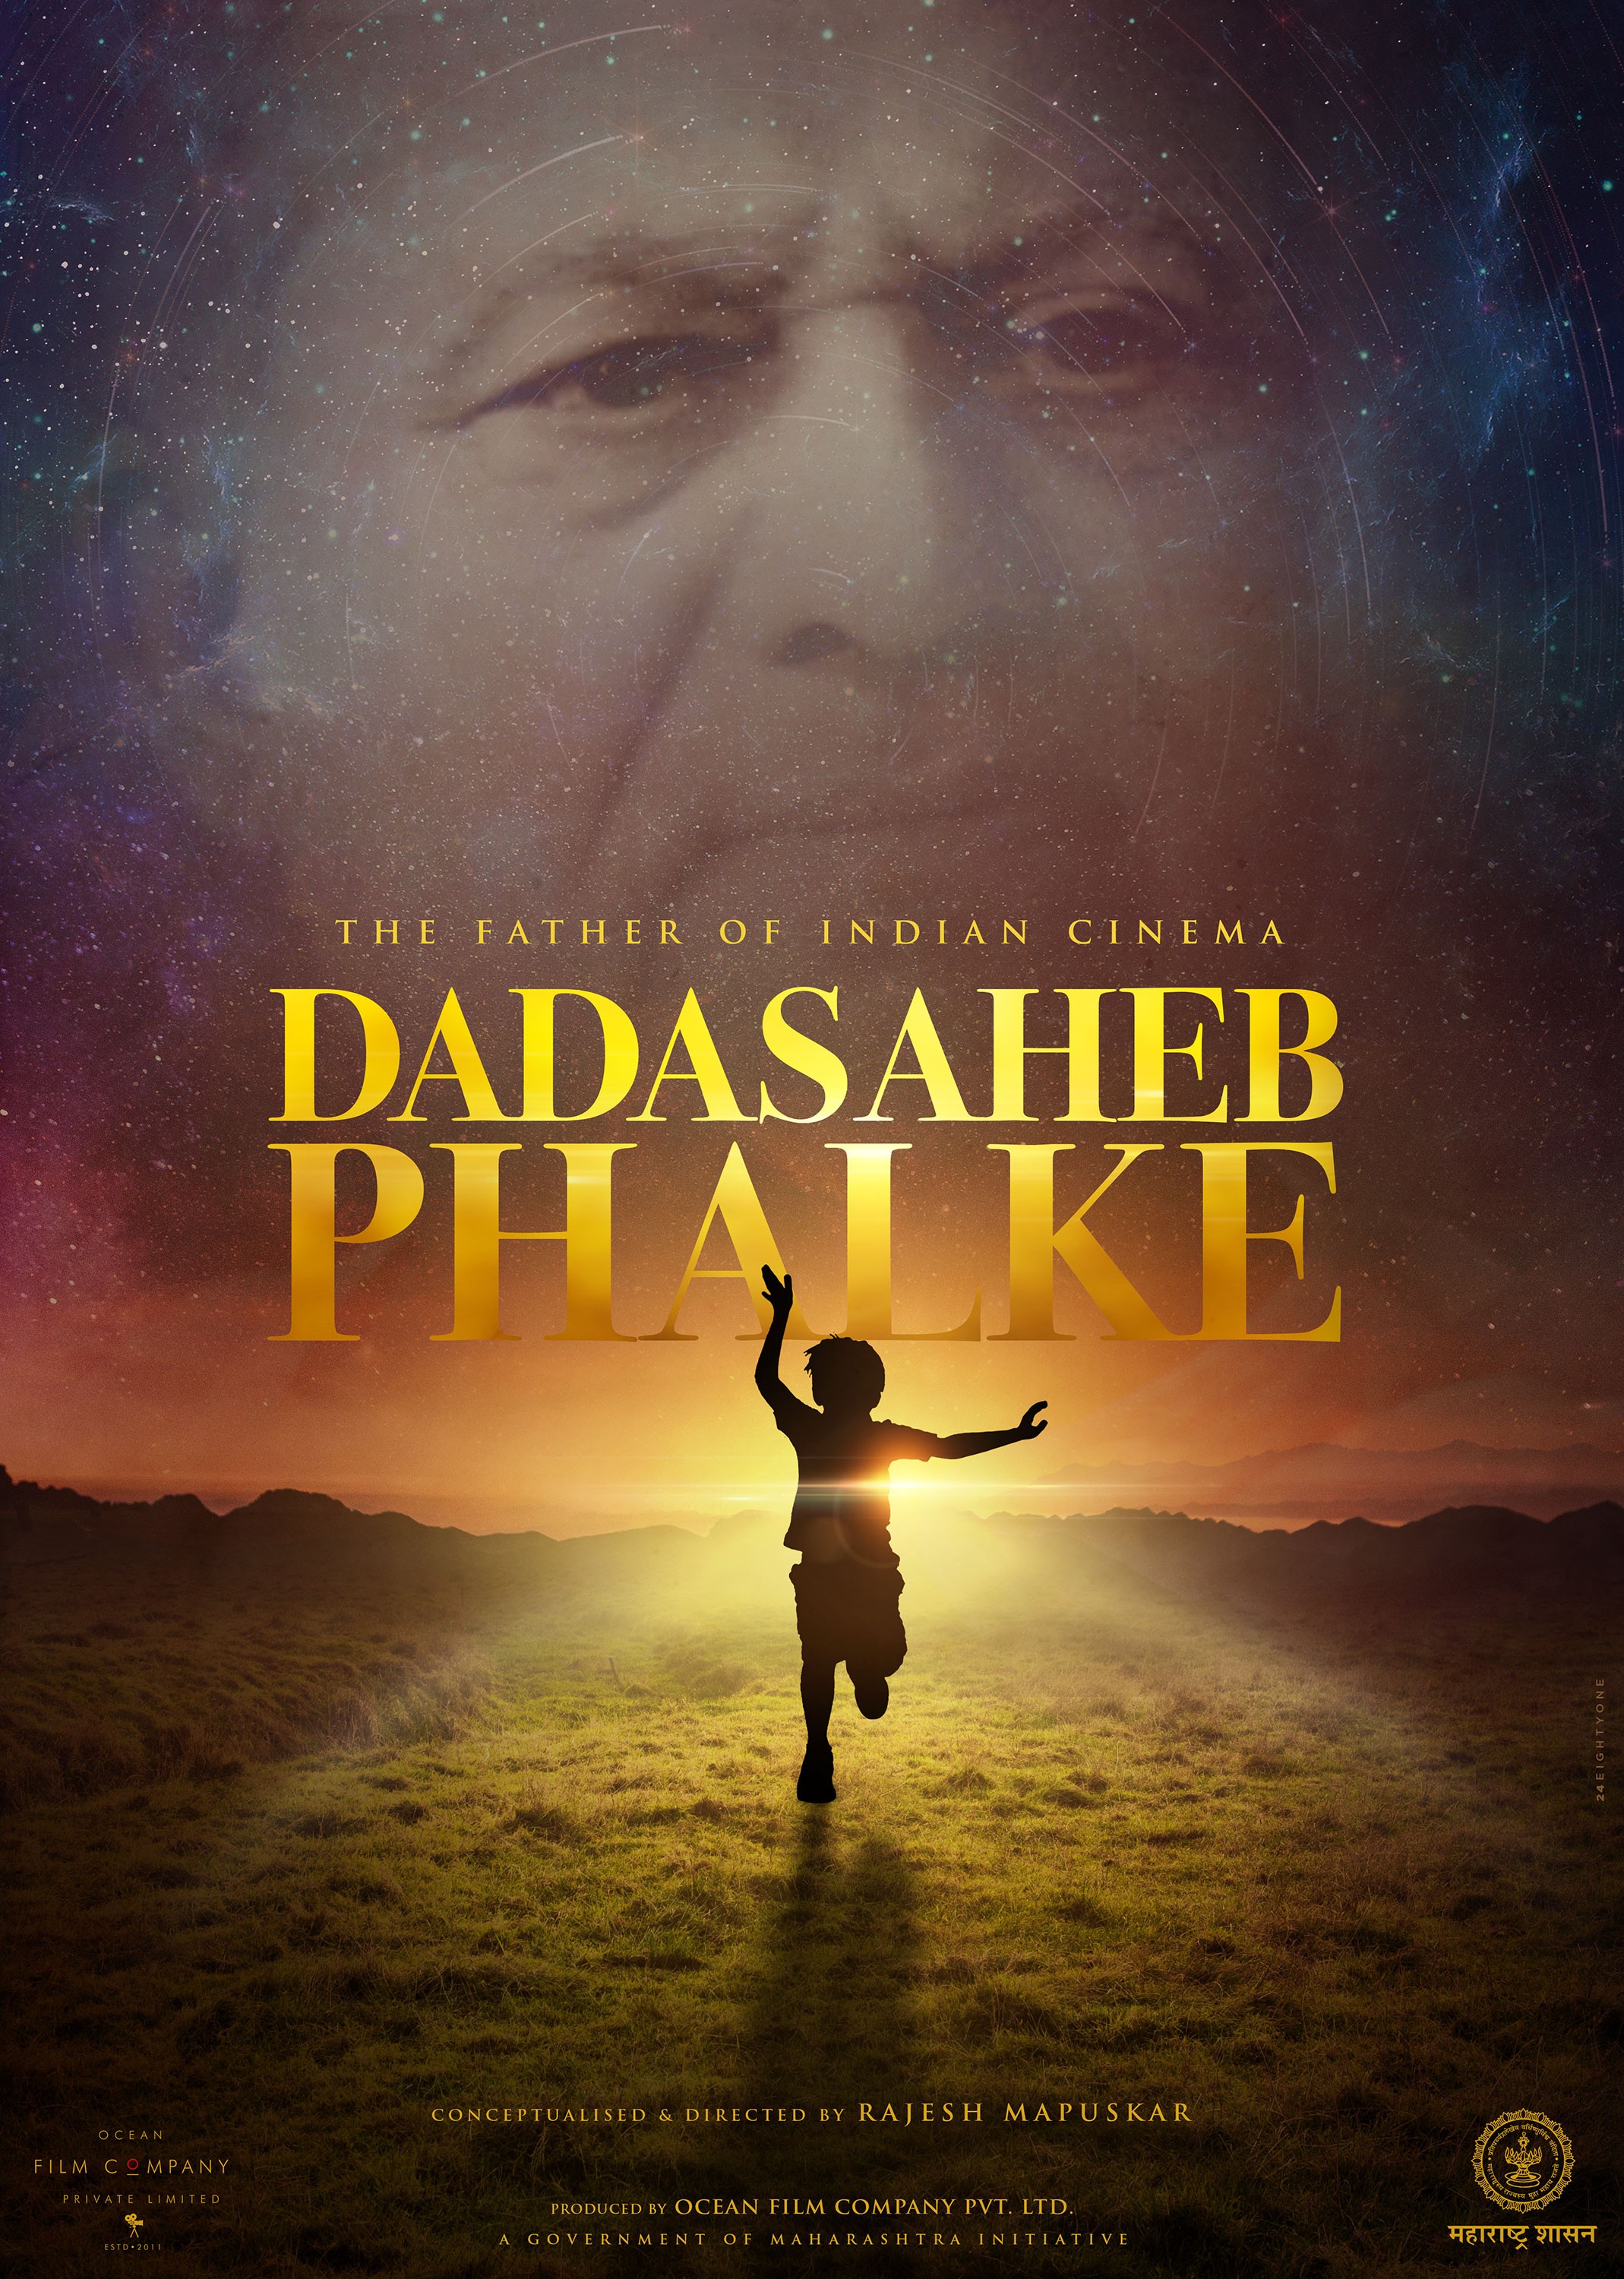 Mega Sized Movie Poster Image for Dadasaheb Phalke